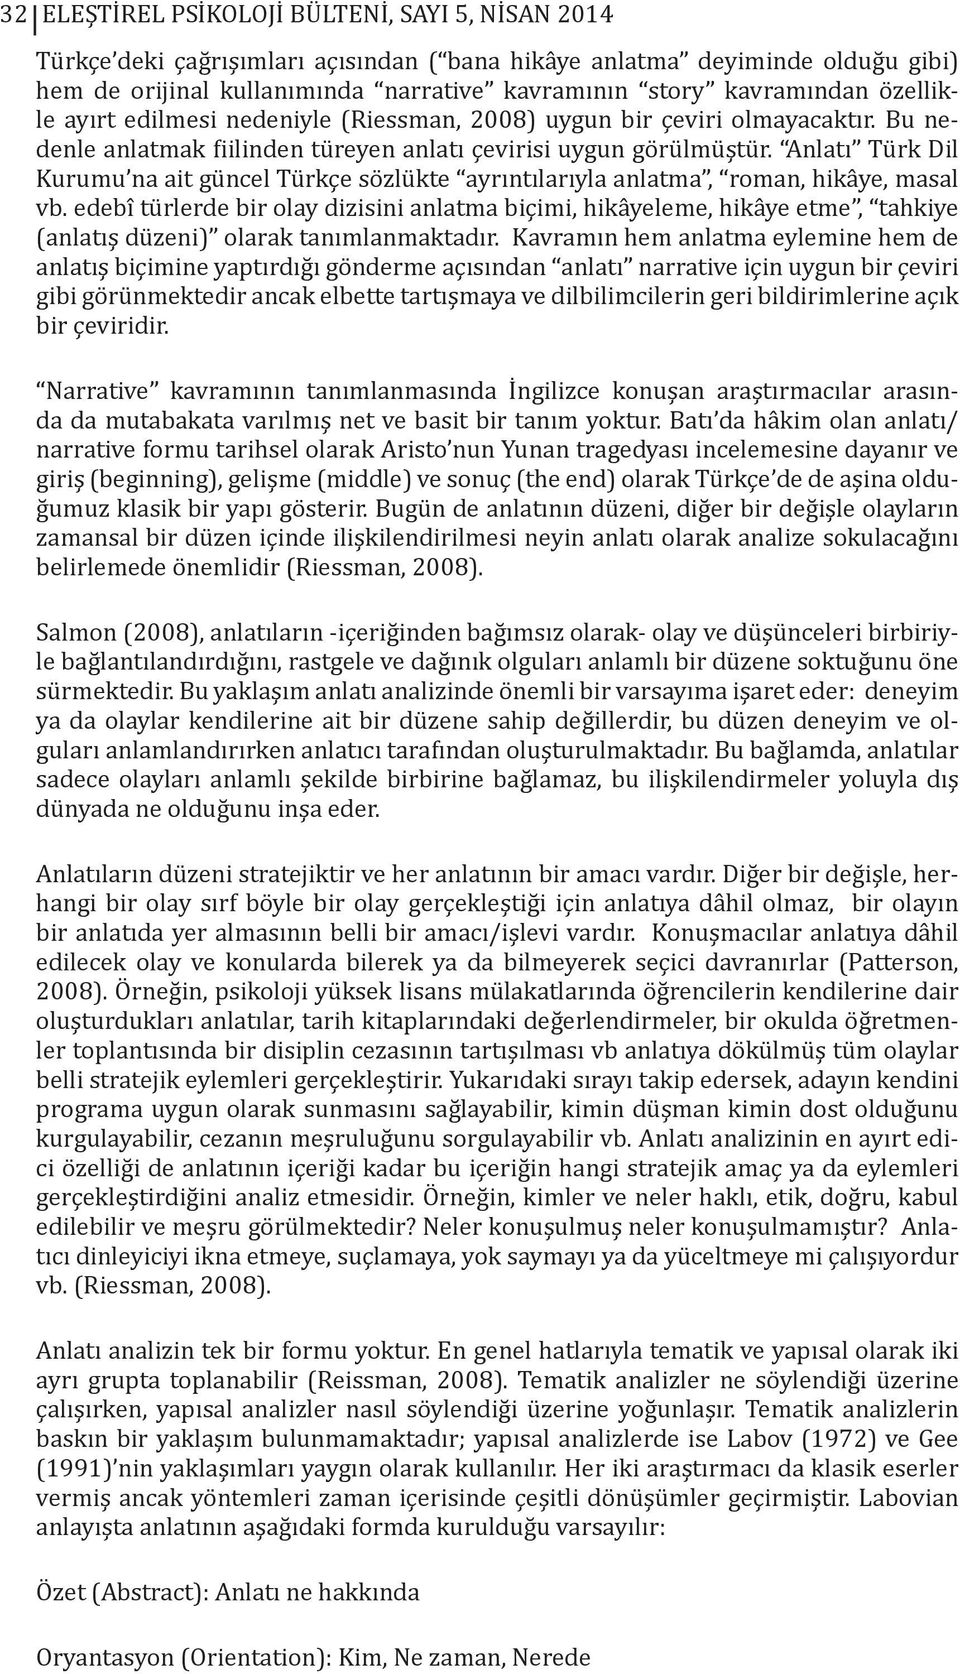 Anlatı Türk Dil Kurumu na ait güncel Türkçe sözlükte ayrıntılarıyla anlatma, roman, hikâye, masal vb.